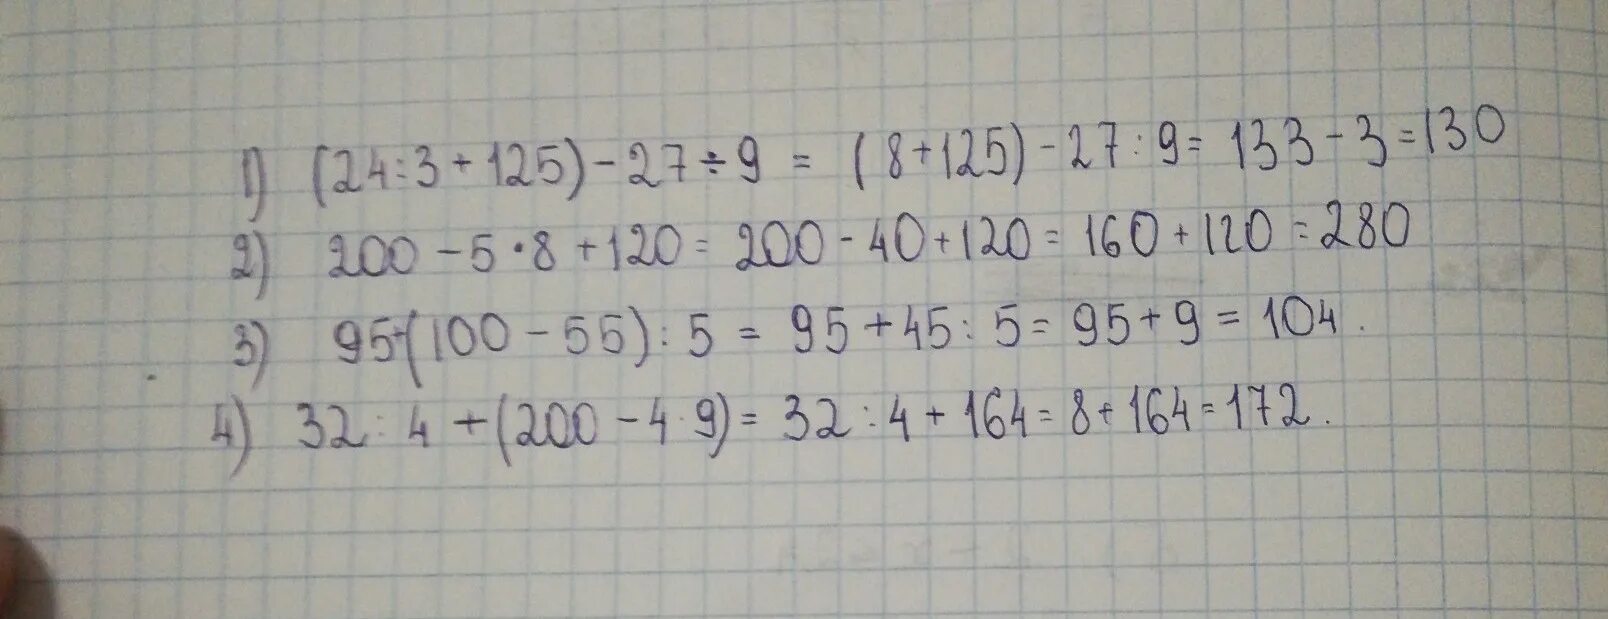 27 3 125 6. 4.200/25. 200•4+200=. 100-27×9-4×3. 125•5•5•5.